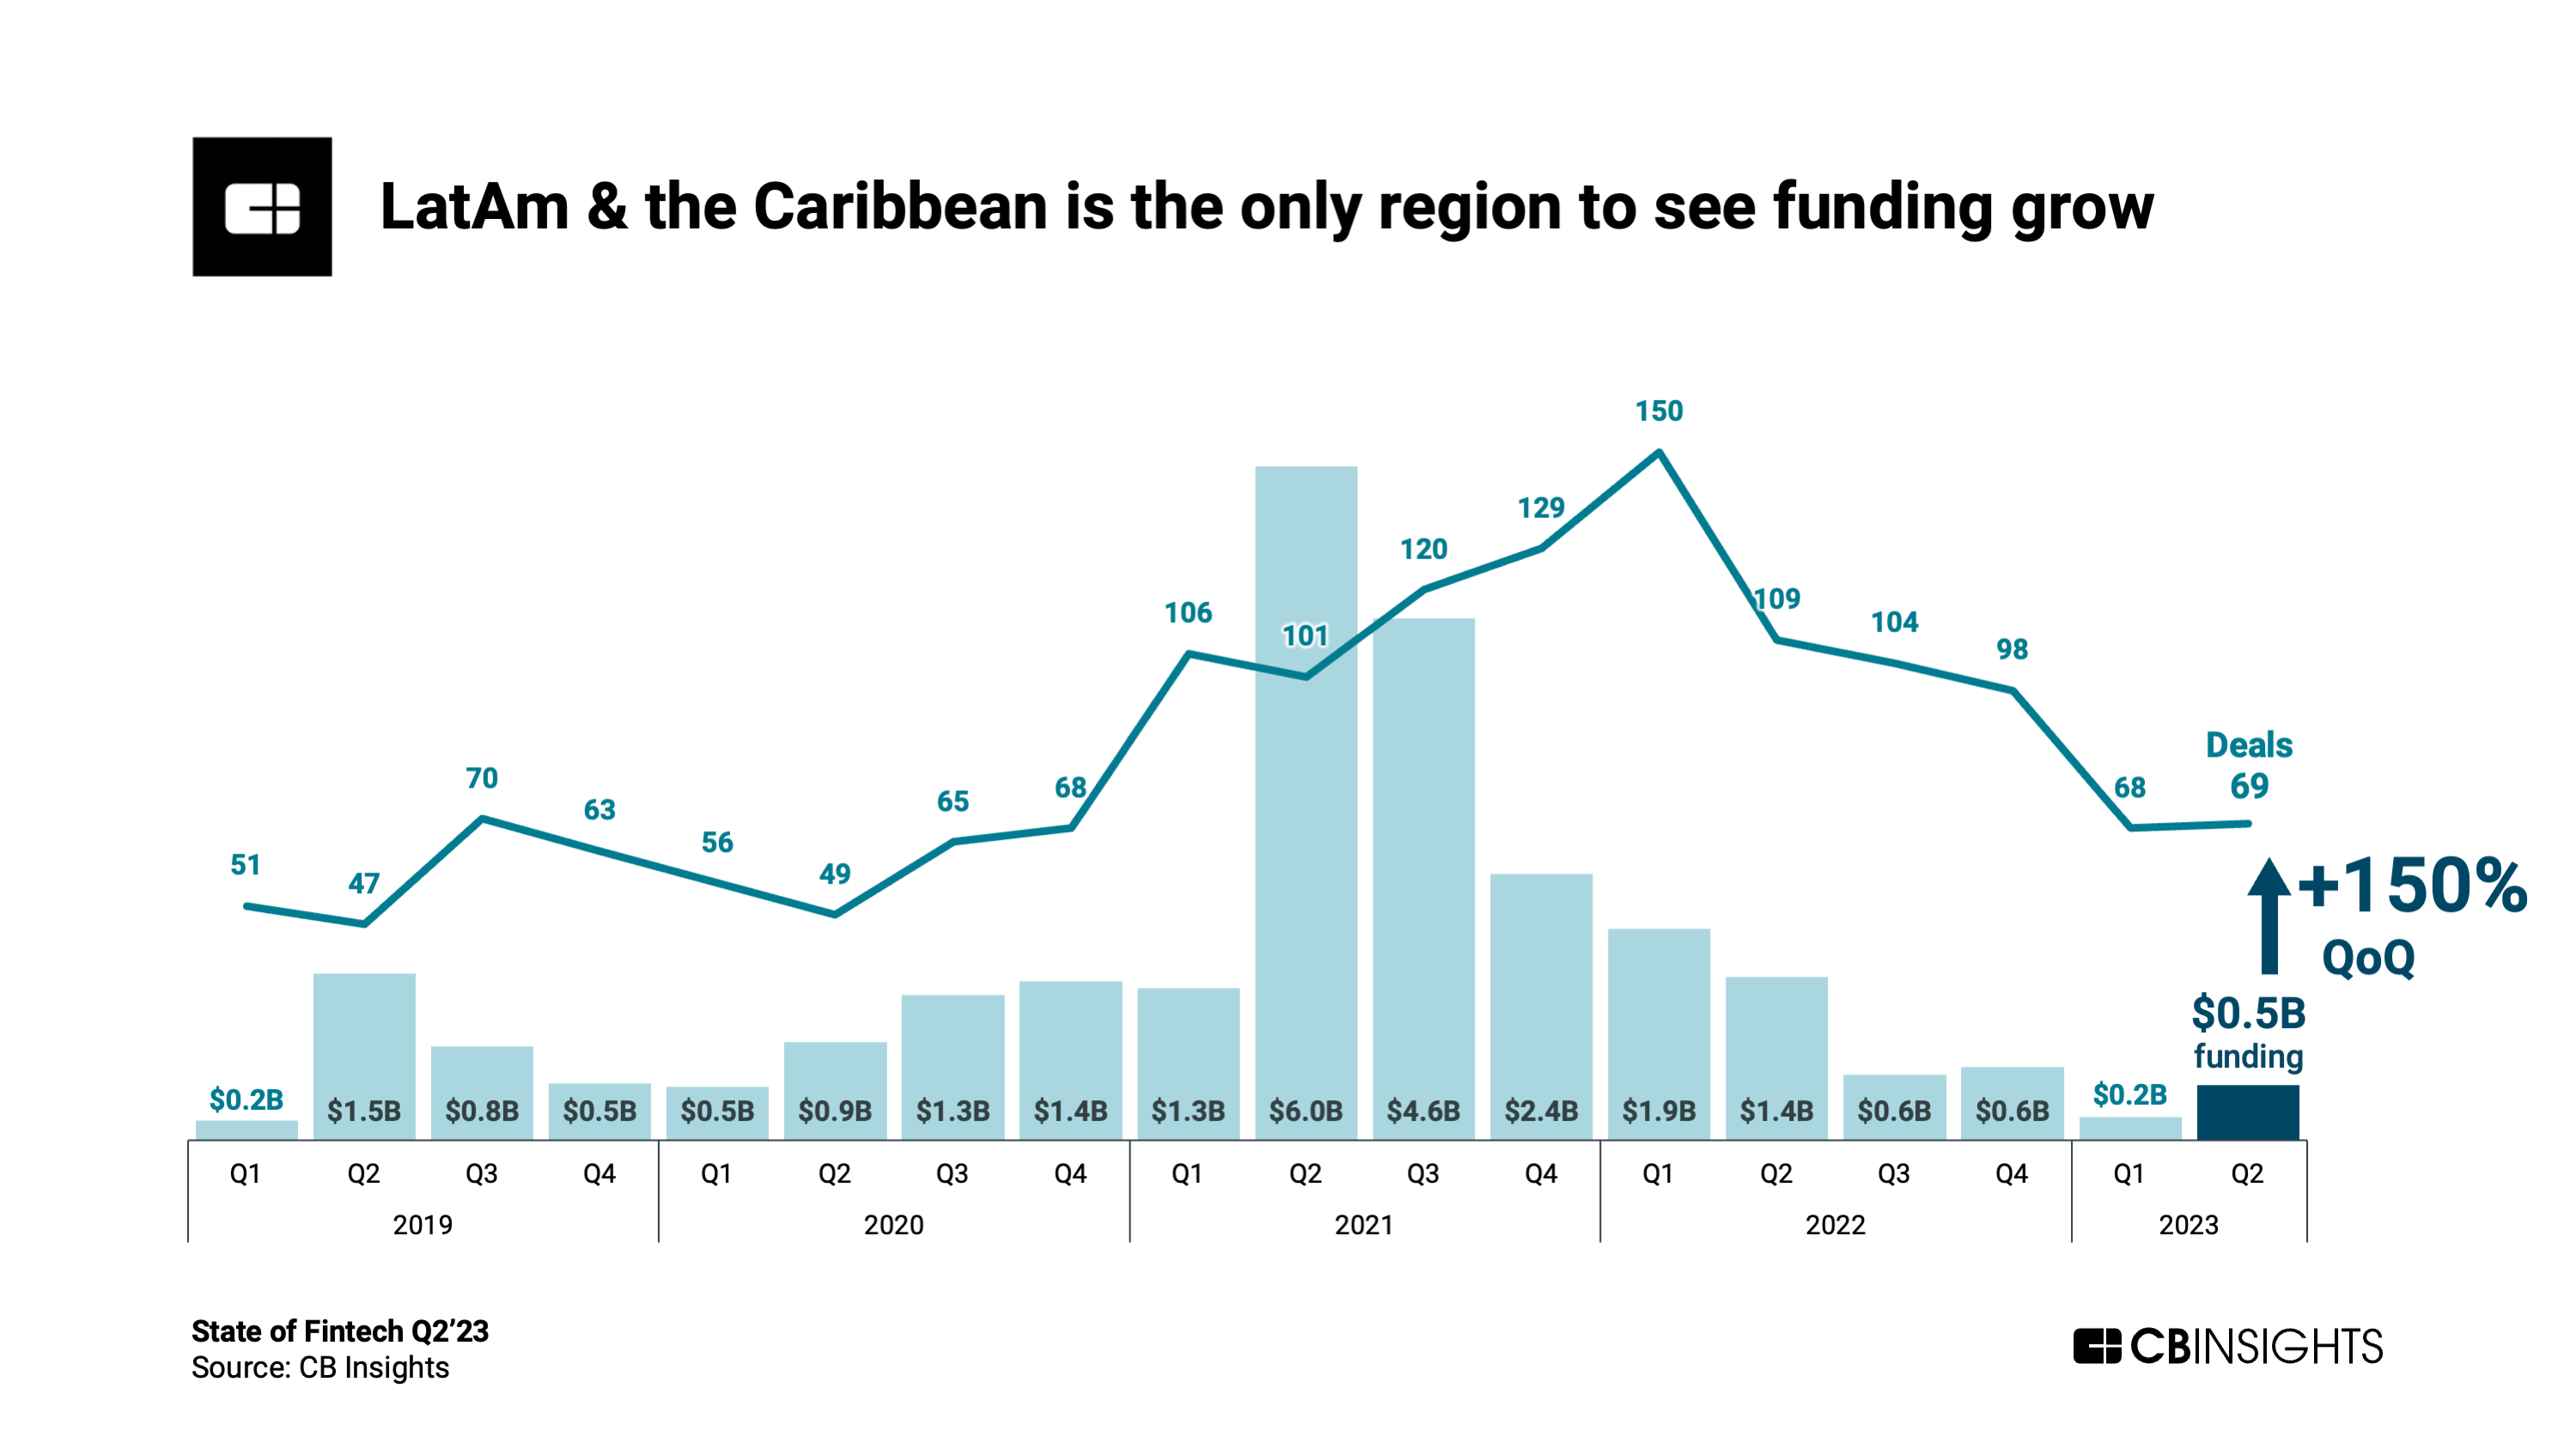 2 年第 2023 四半期のラテンアメリカおよびカリブ海諸国におけるフィンテック資金調達、出典: 2 年第 2023 四半期フィンテックの状況、CB Insights、2023 年 XNUMX 月